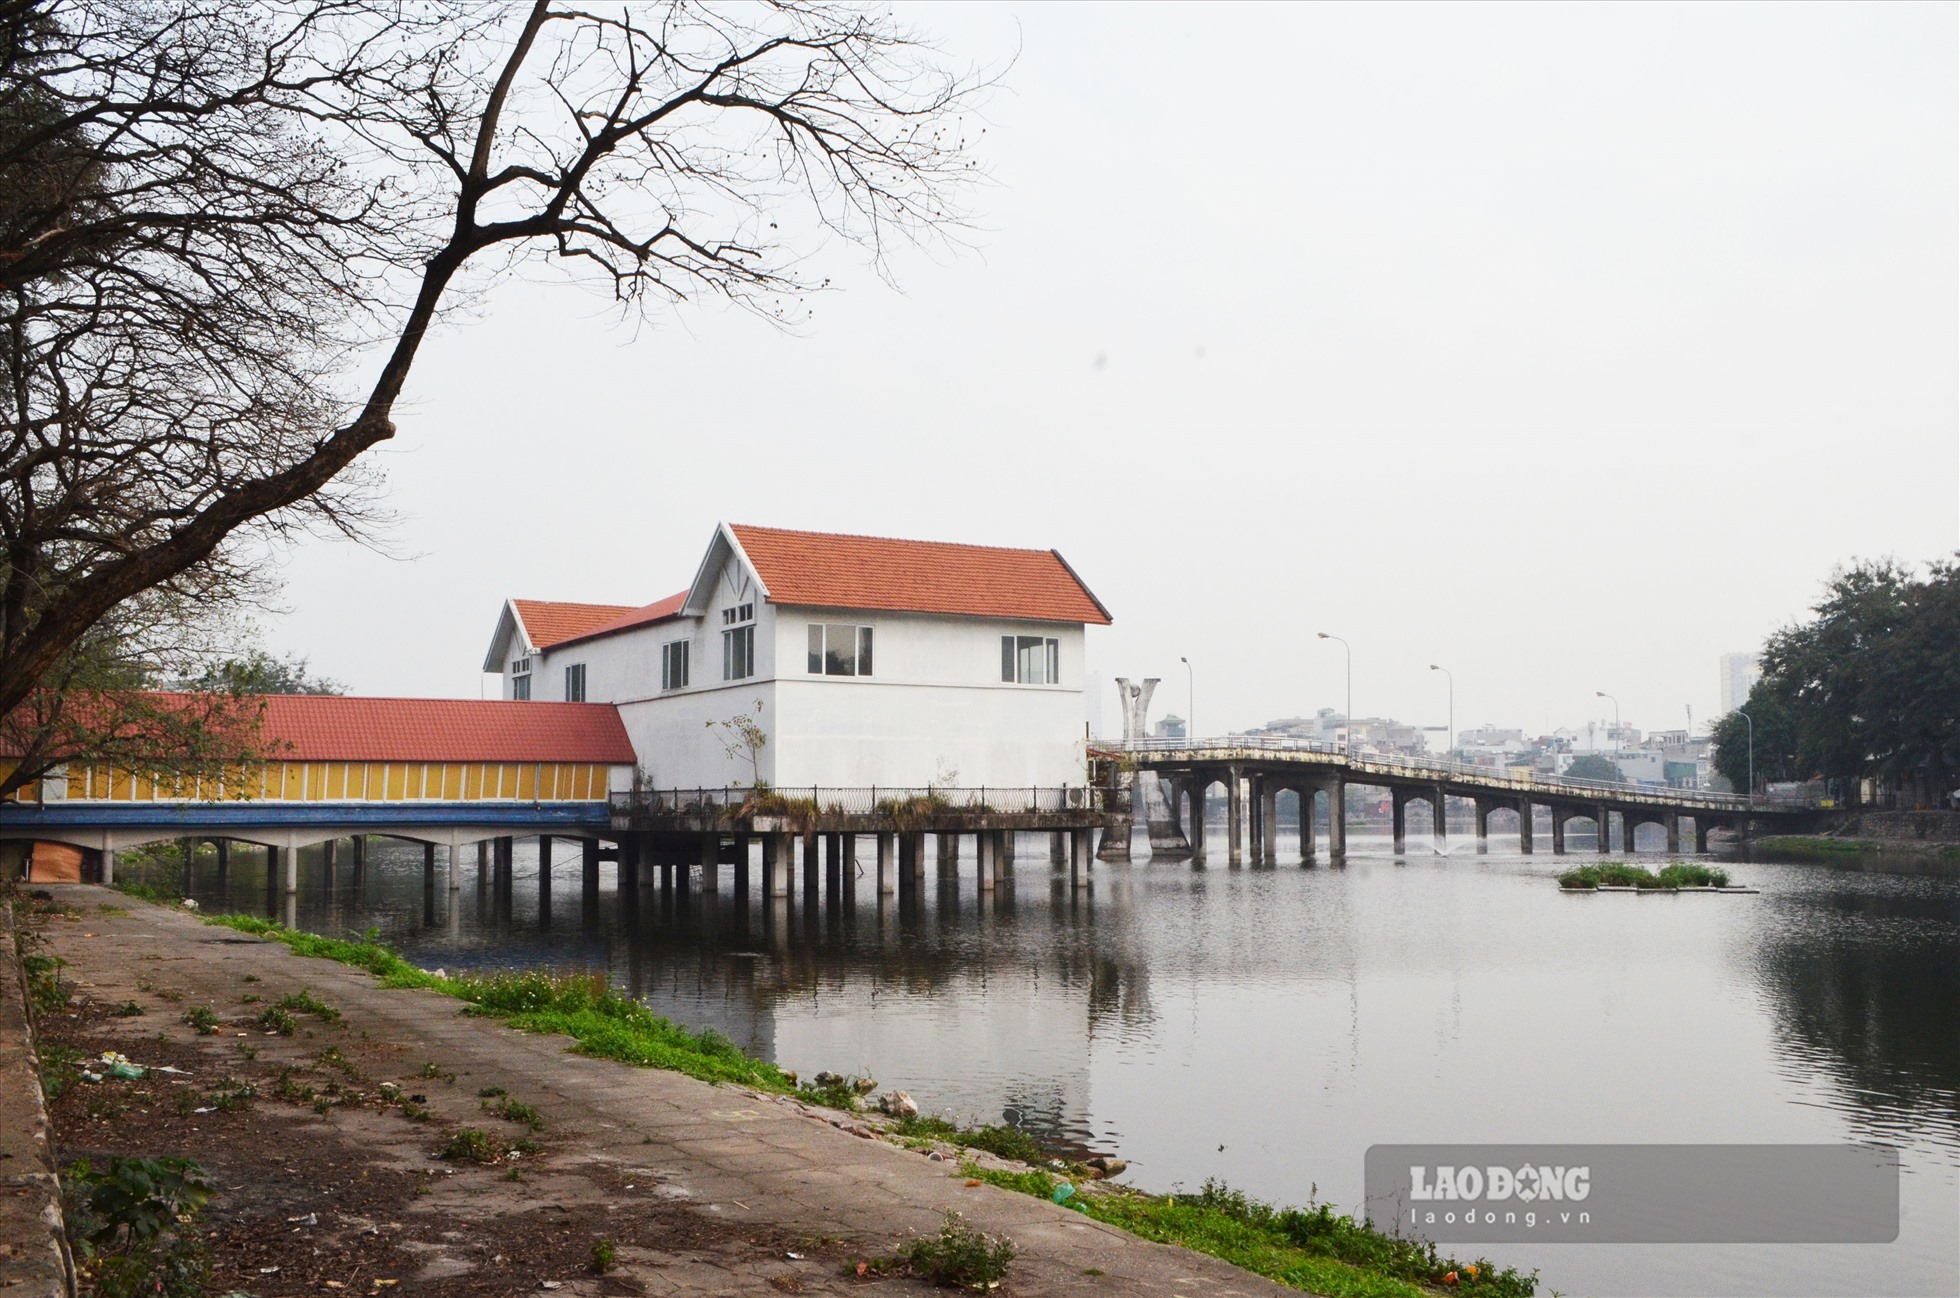 Đoạn cầu qua hồ Thanh Nhàn, nhà nổi được xây dựng kiên cố, tồn tại đã nhiều năm.